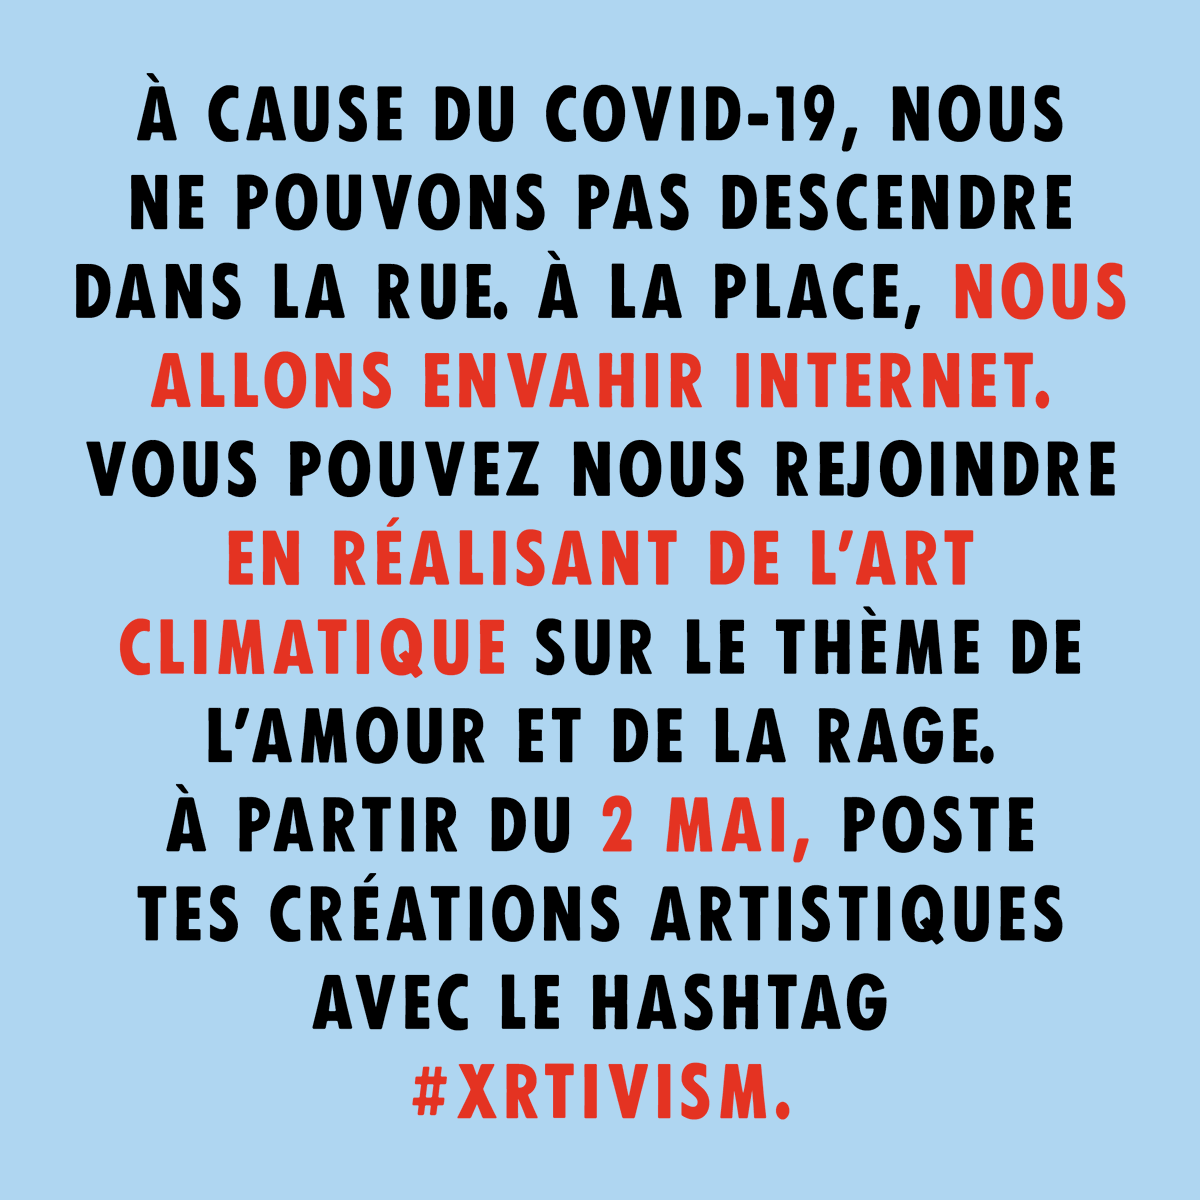 🗓️À partir du 2 mai, @xryouthus et tous les XR Youth vont déclarer la rébellion artistique.
Tout au long du mois de mai, rejoignez cet évènement artistique et utilisez votre créativité🎨 pour exprimer vos émotions face à la crise climatique et écologique !
#XRtivism 
#XRYouth